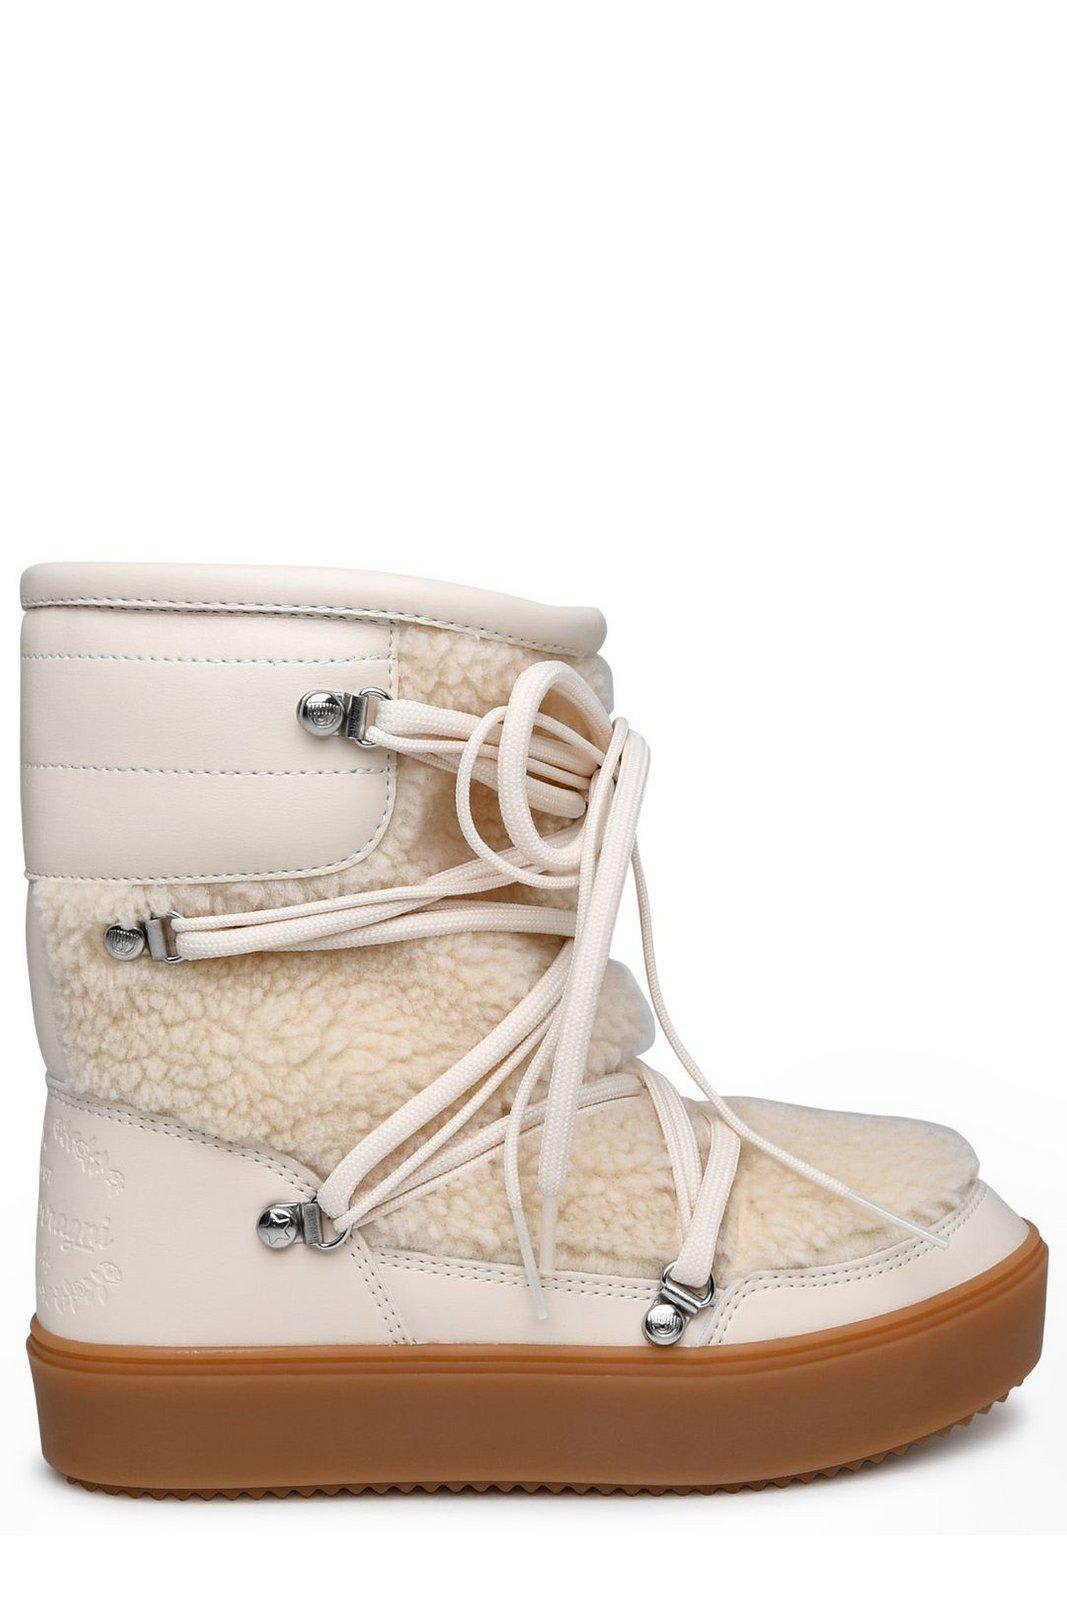 Chiara Ferragni Cf Snow Boots in Natural | Lyst